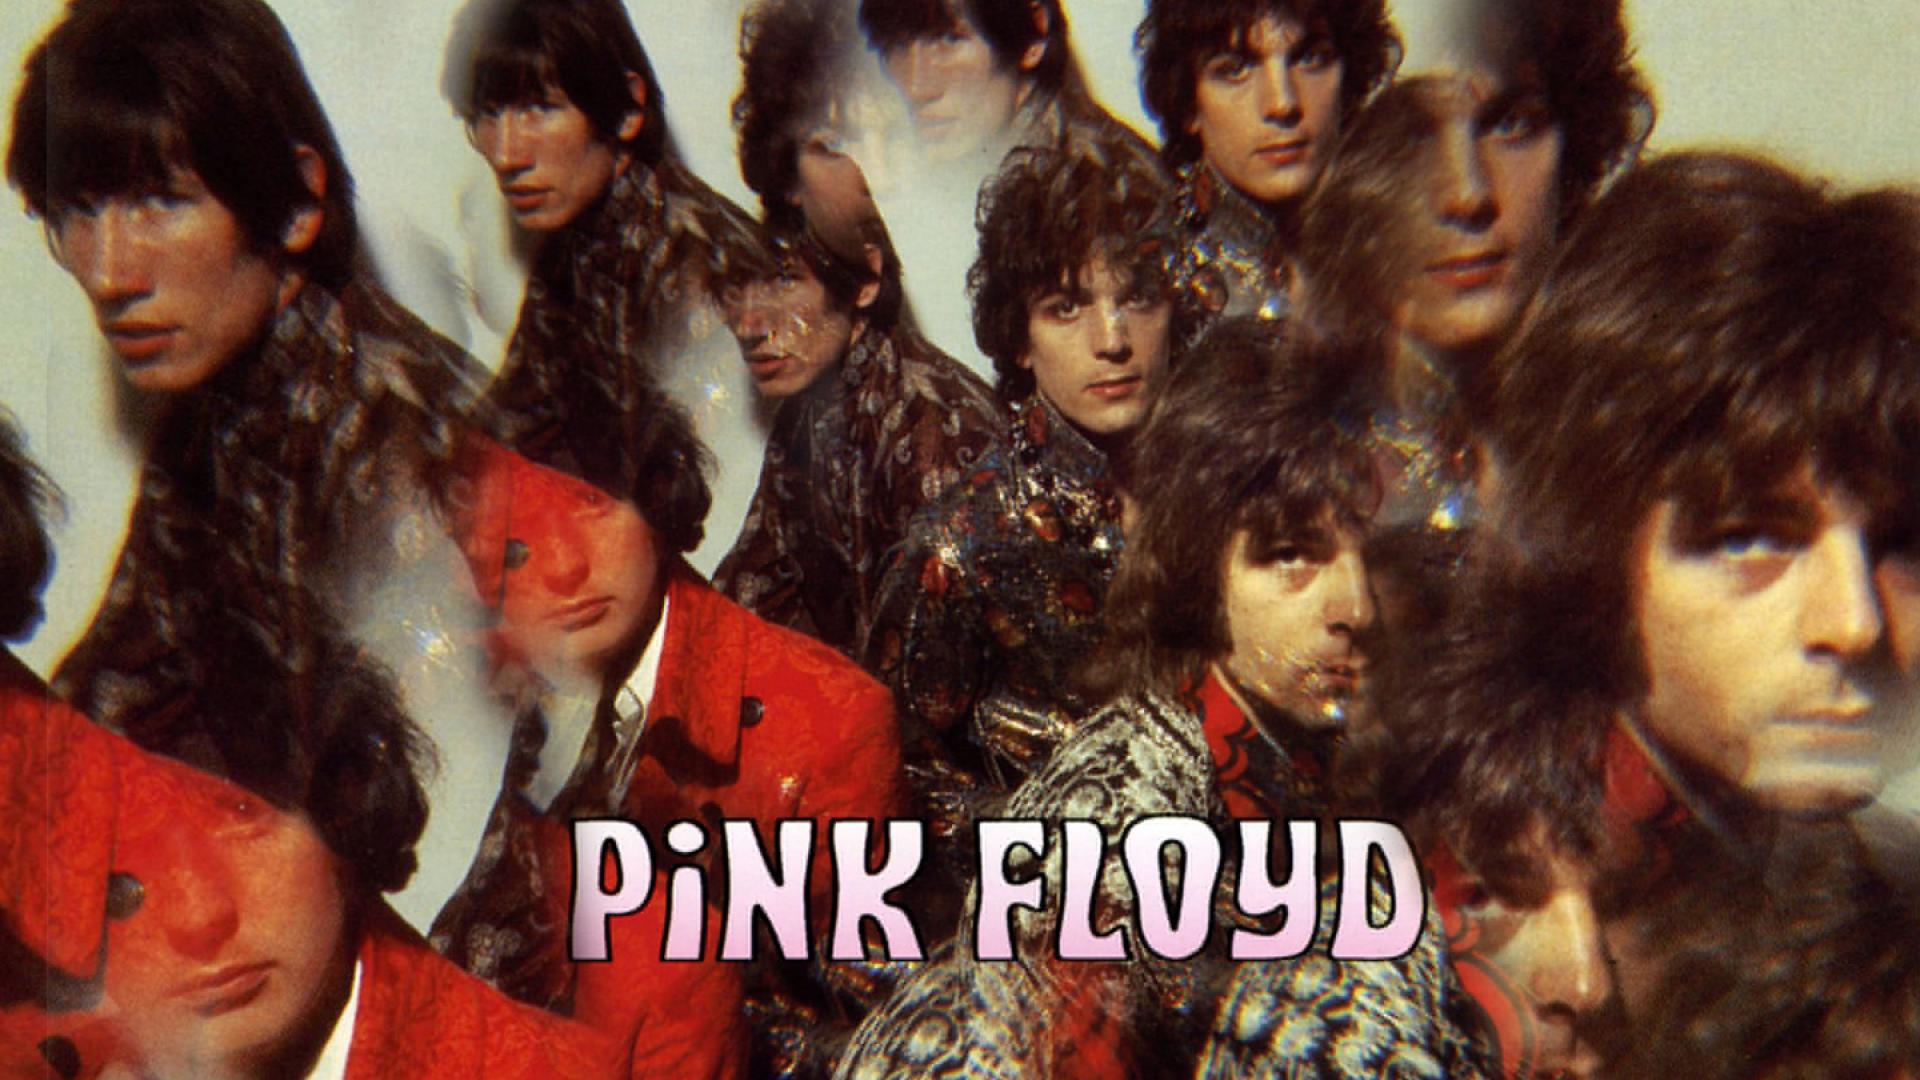 [48+] Pink Floyd Album Covers Wallpaper on WallpaperSafari